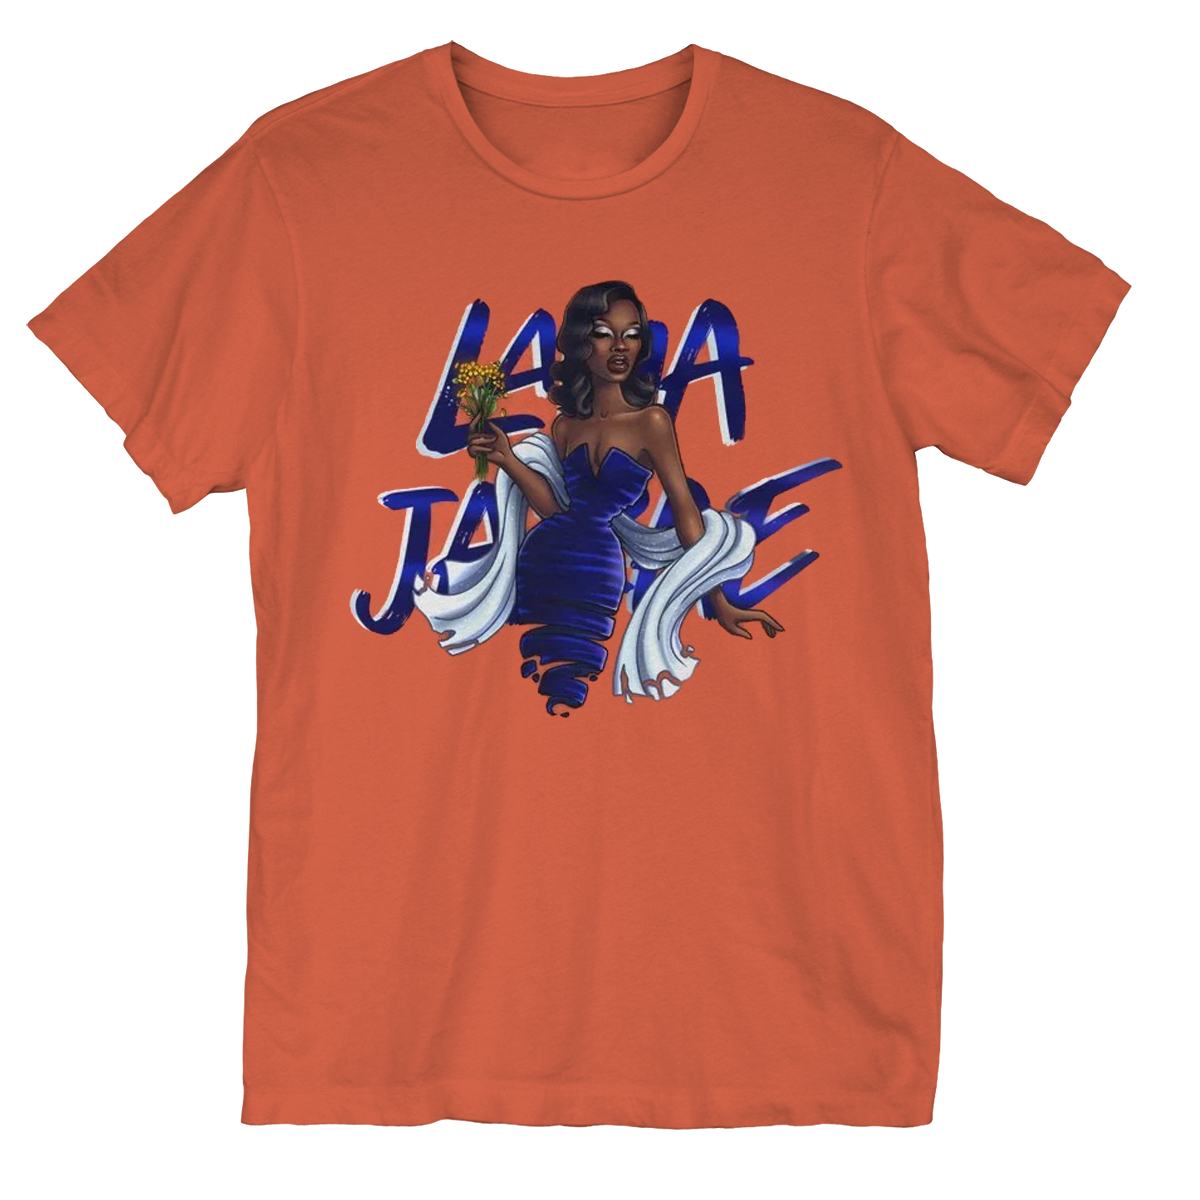 Lana Ja'Rae - Blue Goddess T-Shirt